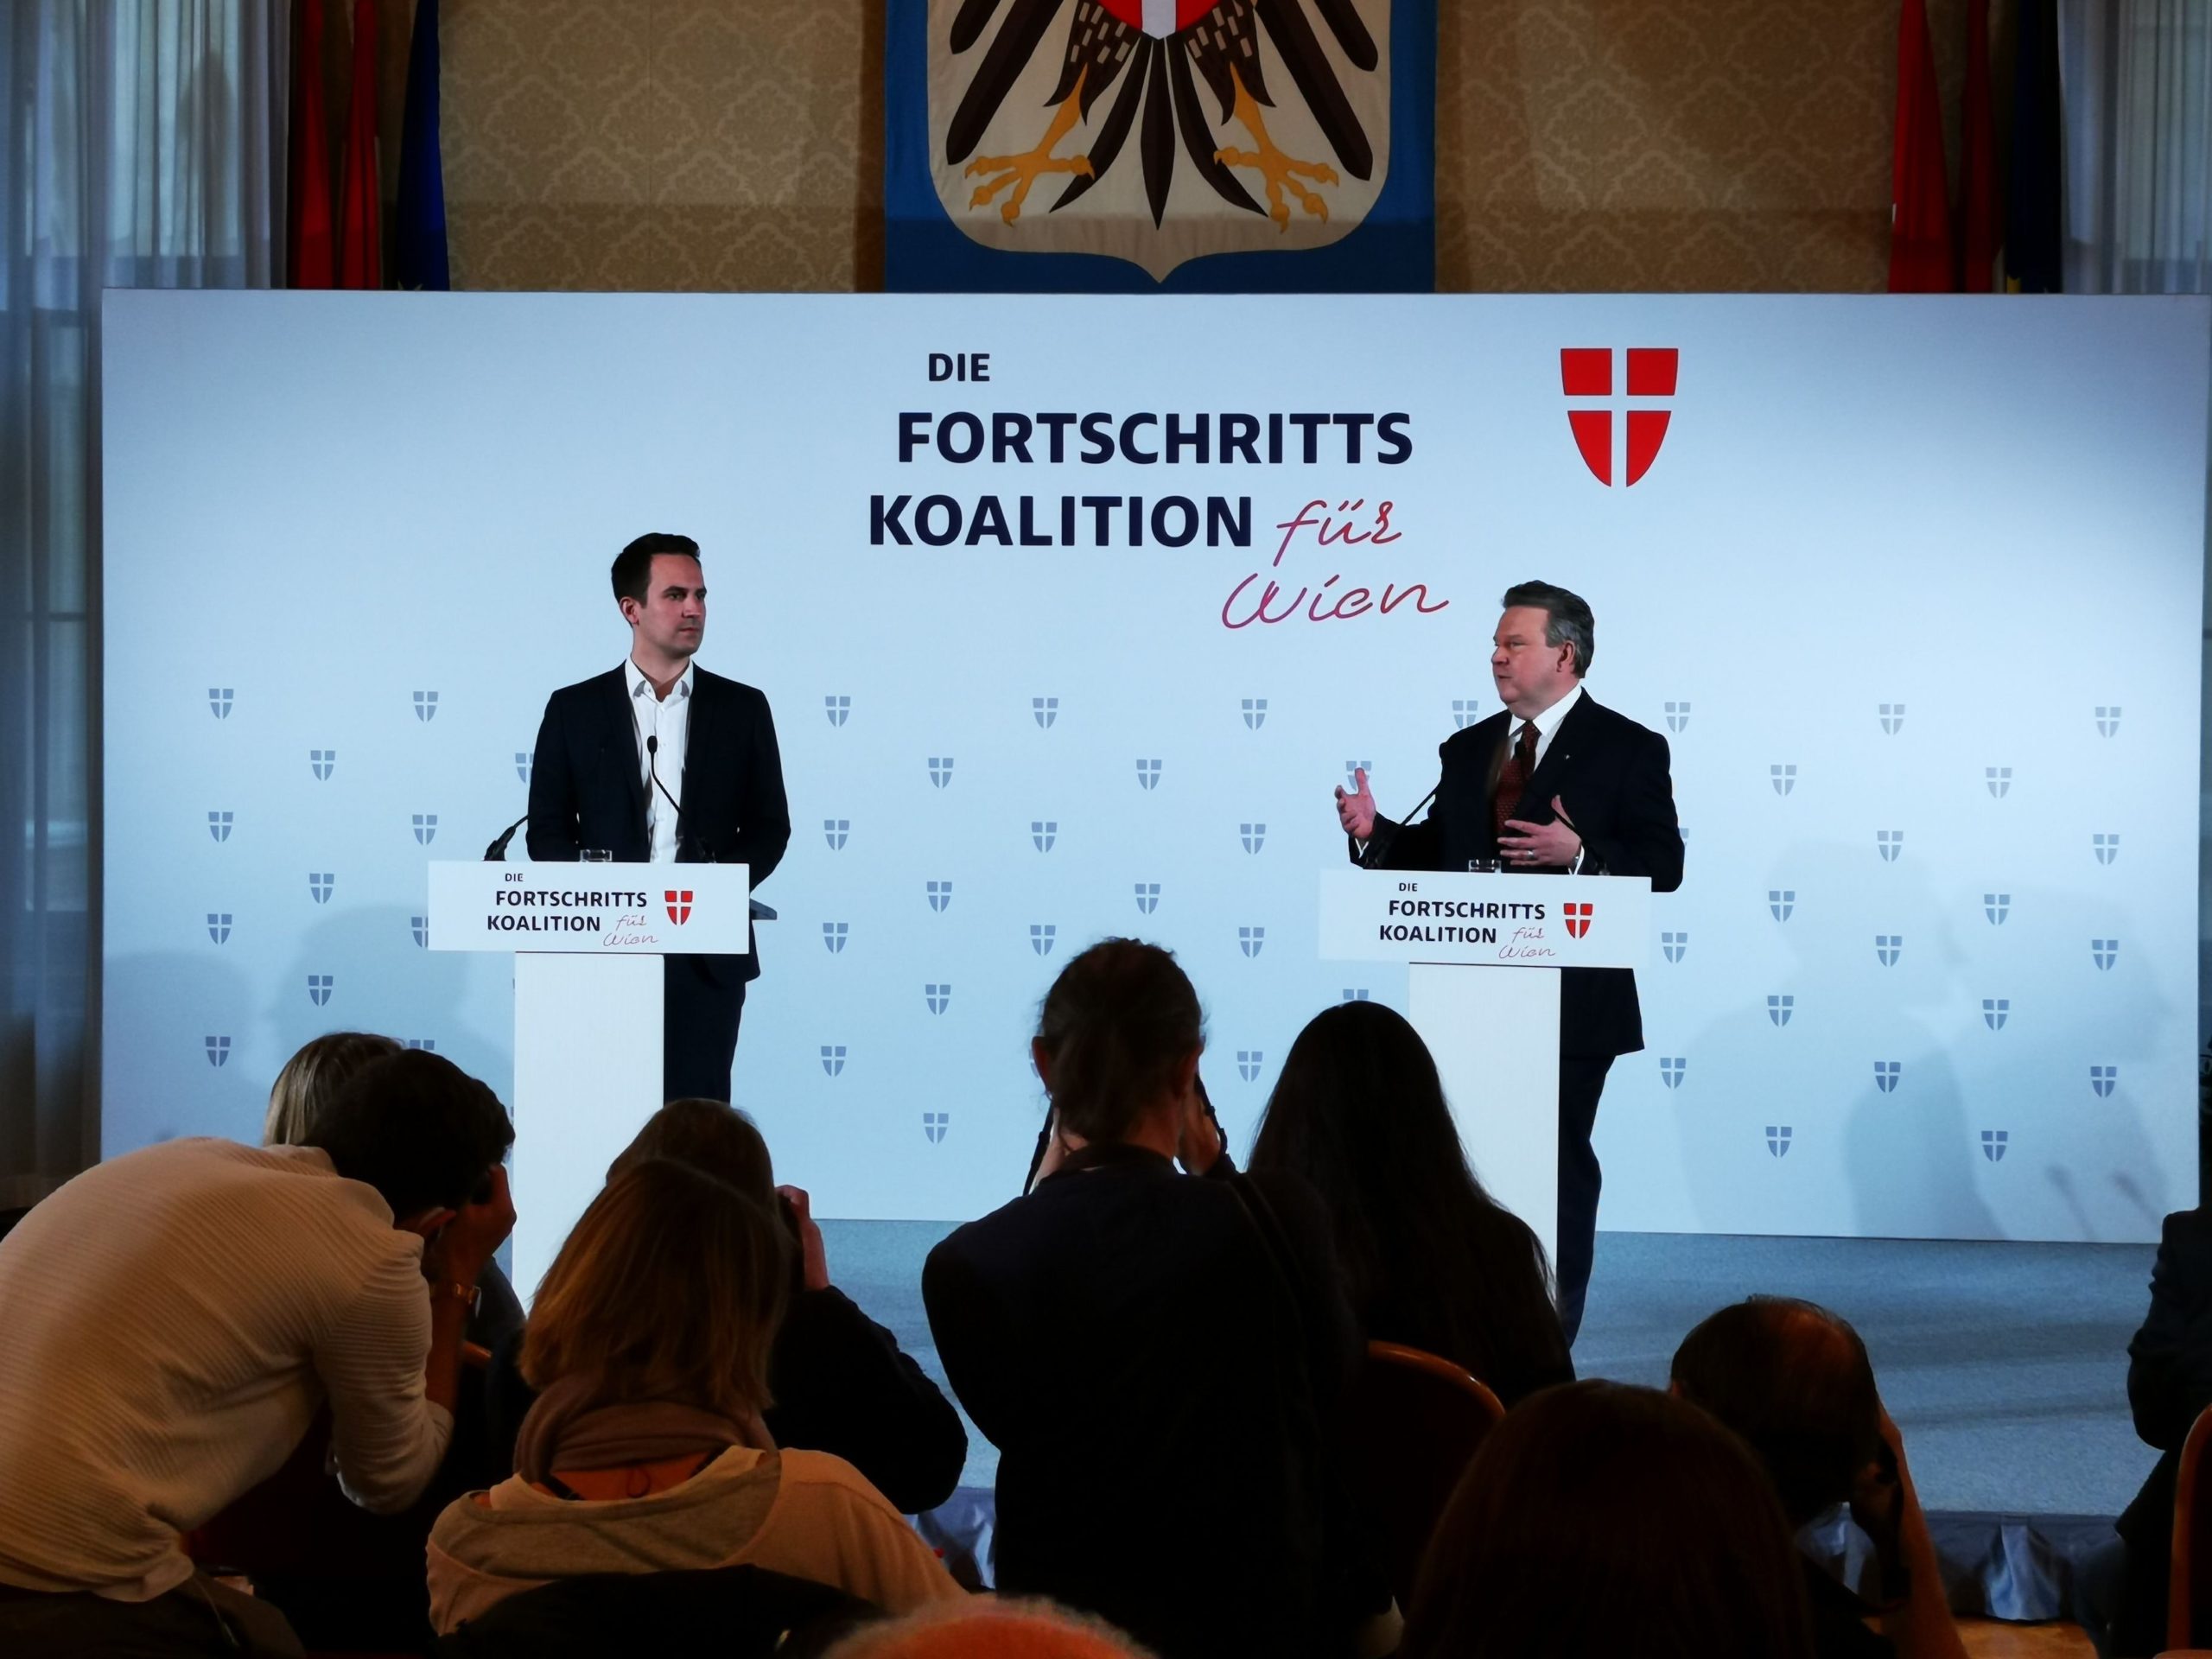 Fortschrittskoalition für Wien: Statement von Christoph Wiederkehr